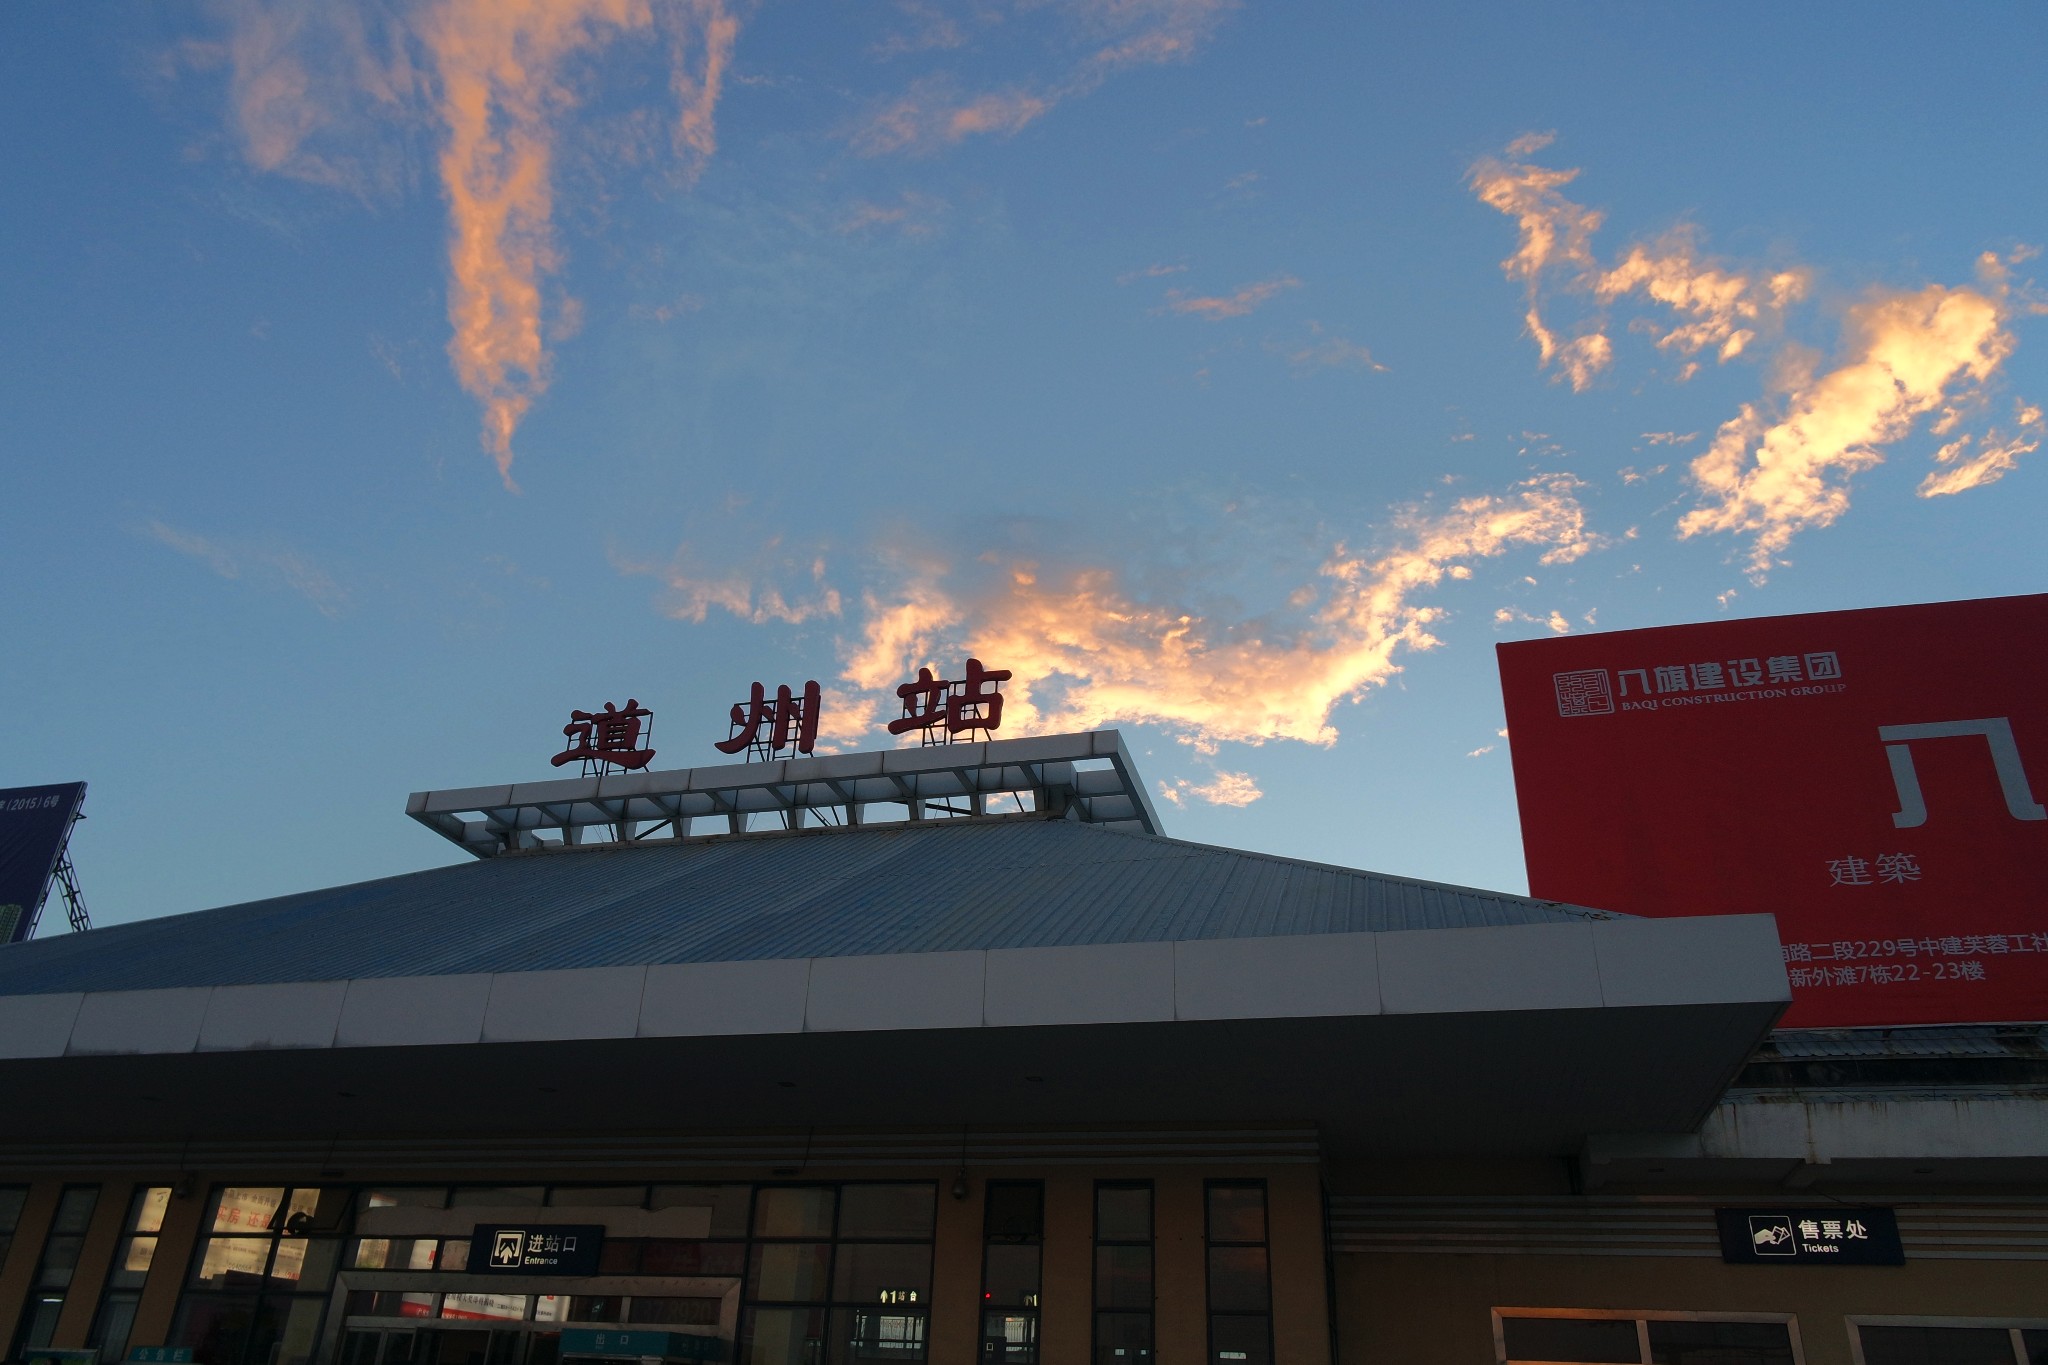 道州火车站9月5日双牌水库双牌牙山村本篇游记共含5812个文字,0张图片